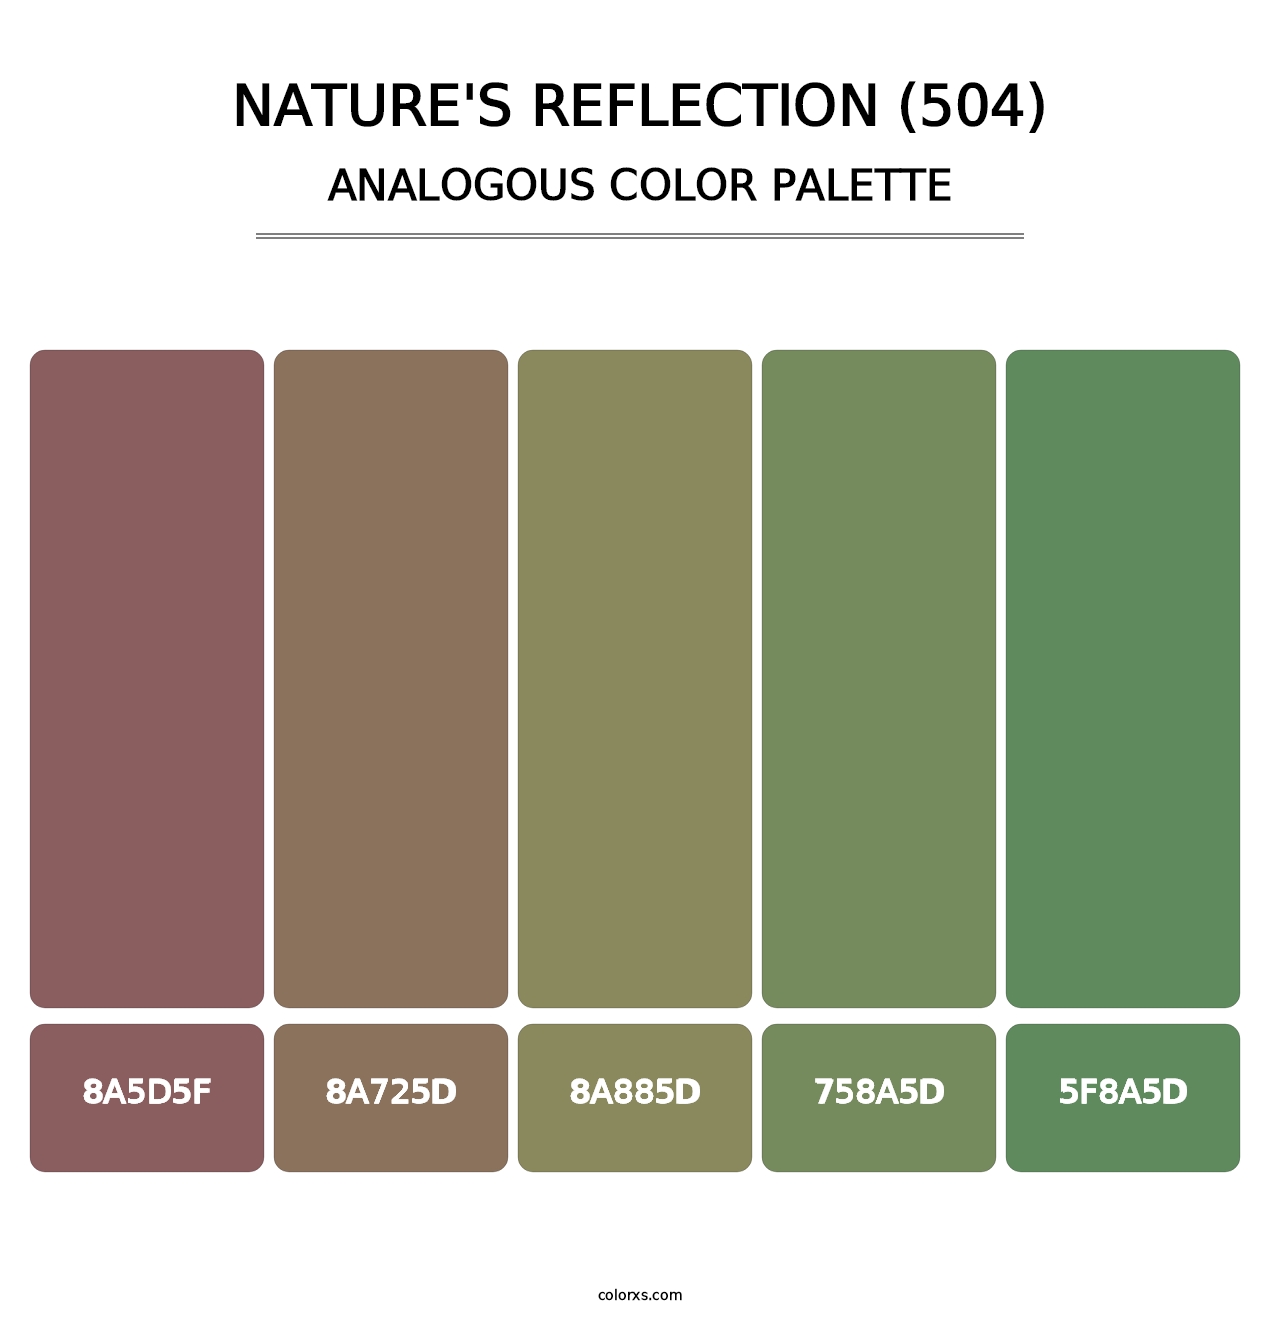 Nature's Reflection (504) - Analogous Color Palette